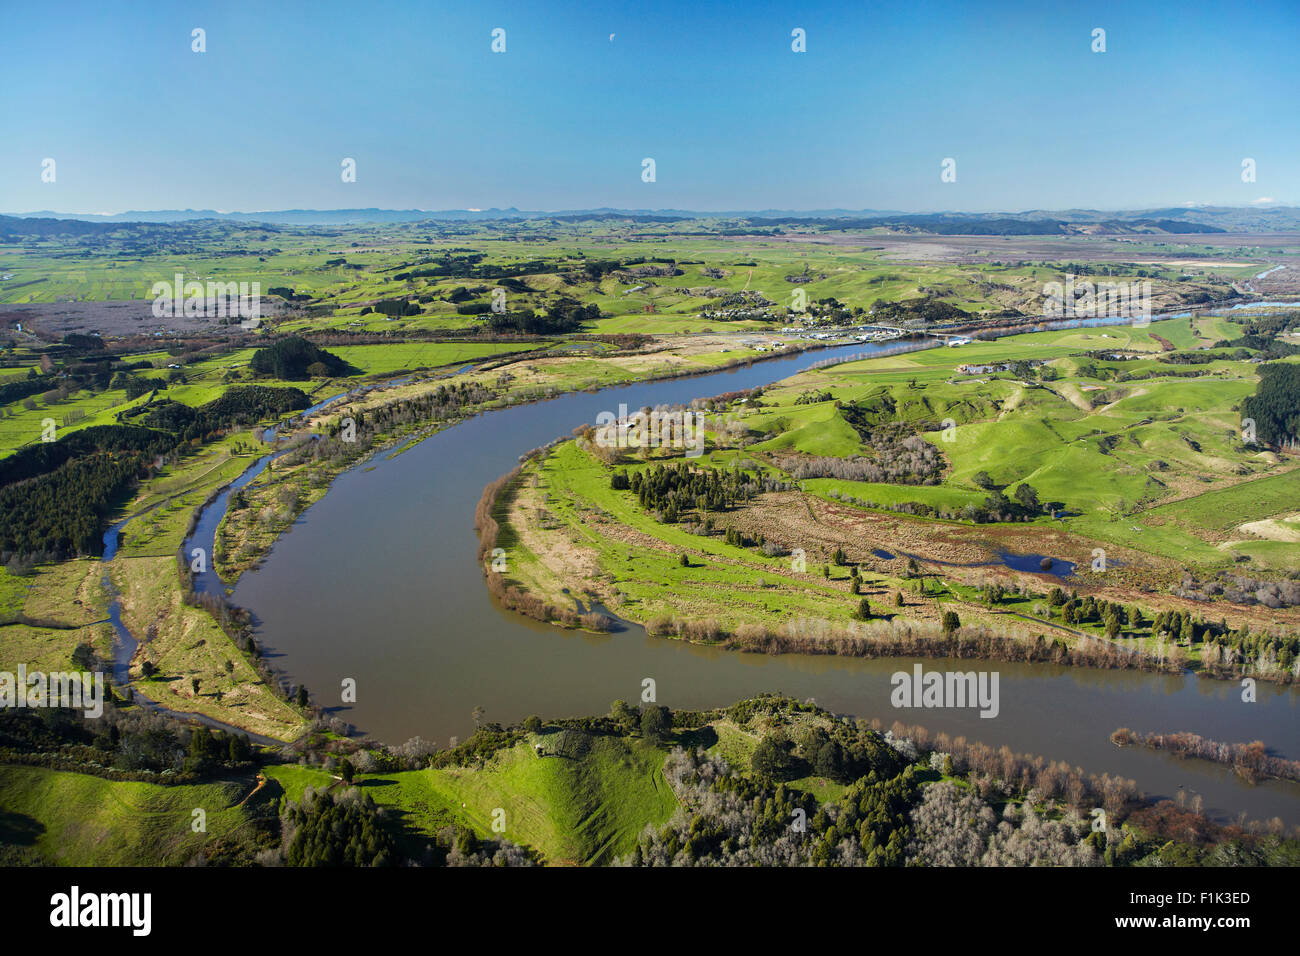 La rivière Waikato et Mercer, South Auckland, île du Nord, Nouvelle-Zélande - vue aérienne Banque D'Images